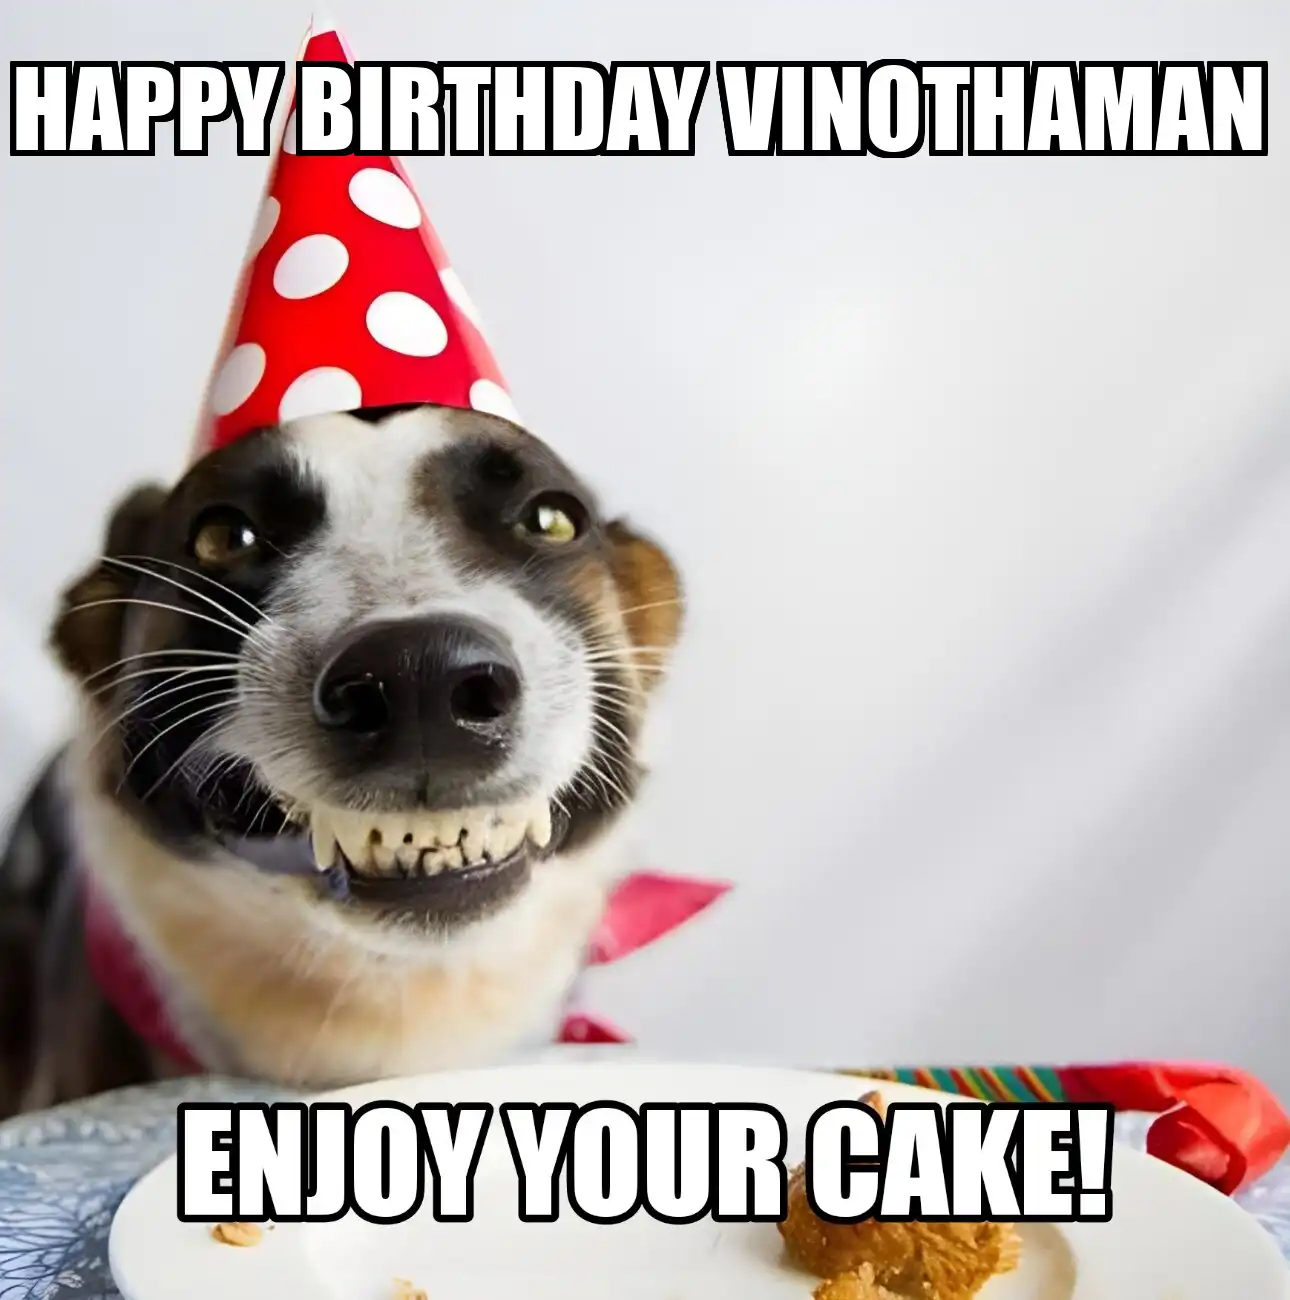 Happy Birthday Vinothaman Enjoy Your Cake Dog Meme